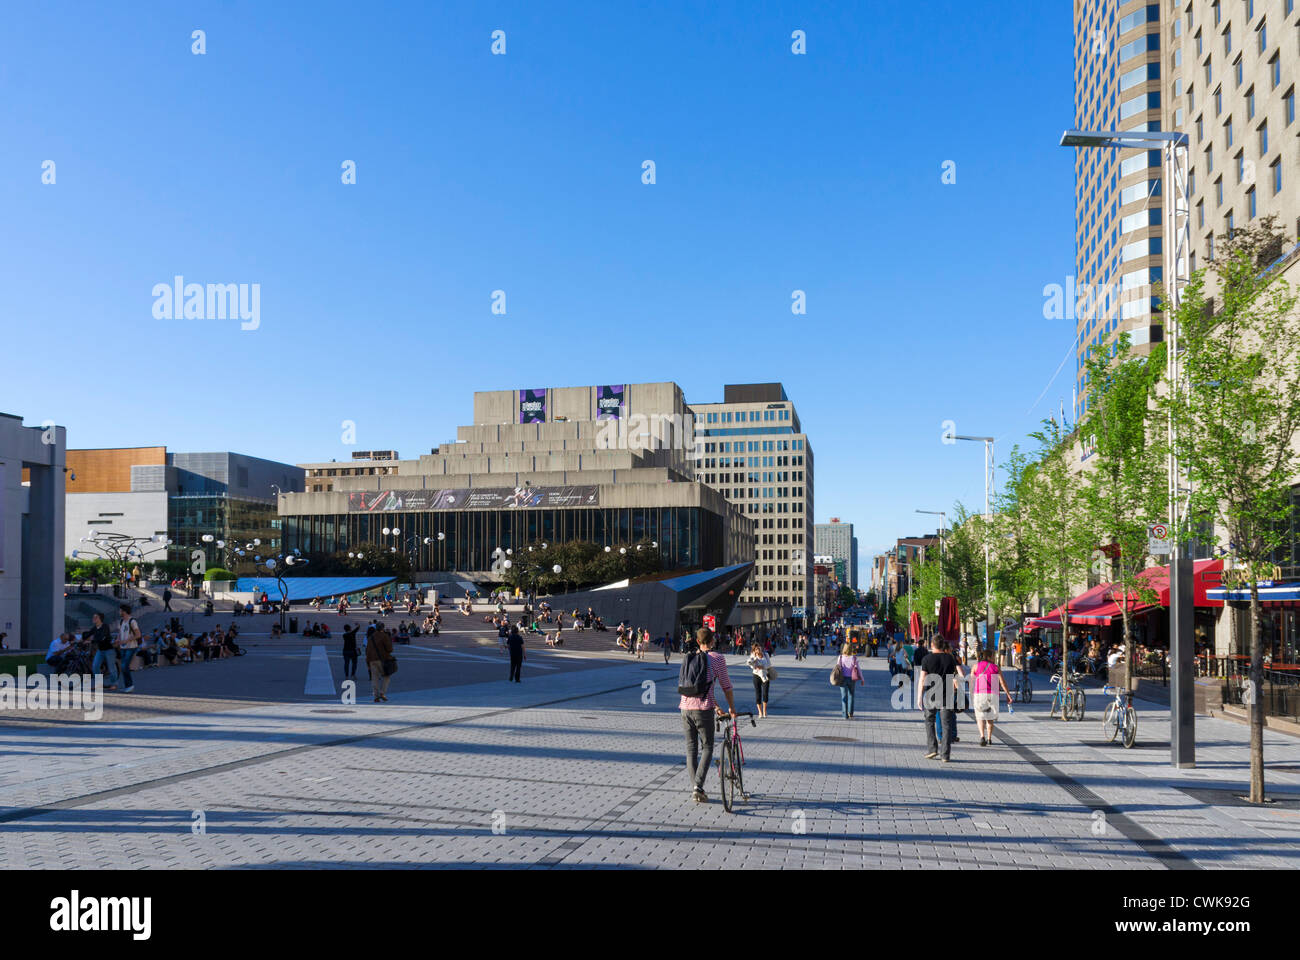 The Place des Arts looking towards the Maisonneuve Theatre, Quartier des Spectacles, Montreal, Quebec, Canada Stock Photo